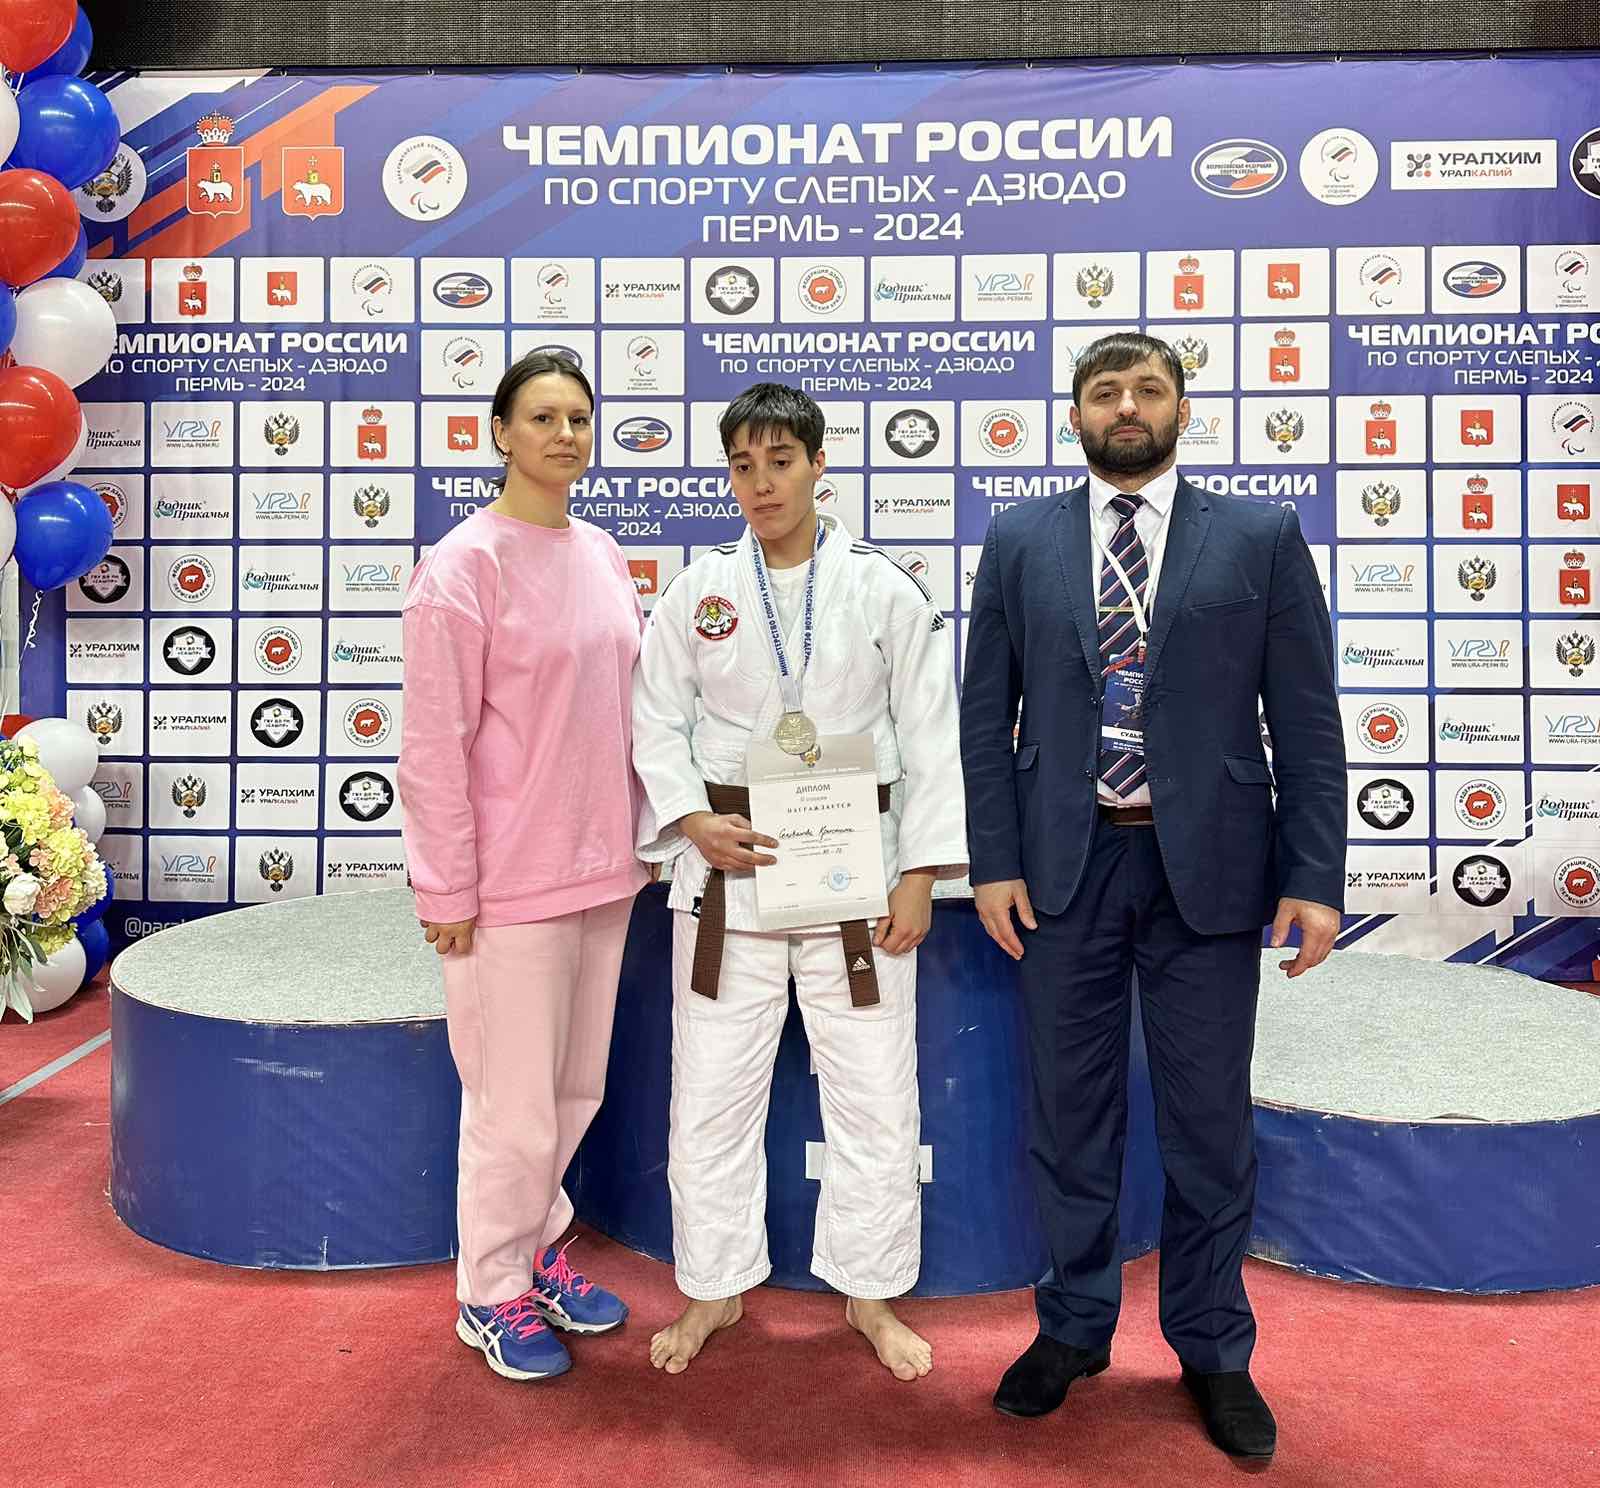 4 апреля прошёл Чемпионат России по спорту слепых (дзюдо) в г. Пермь.